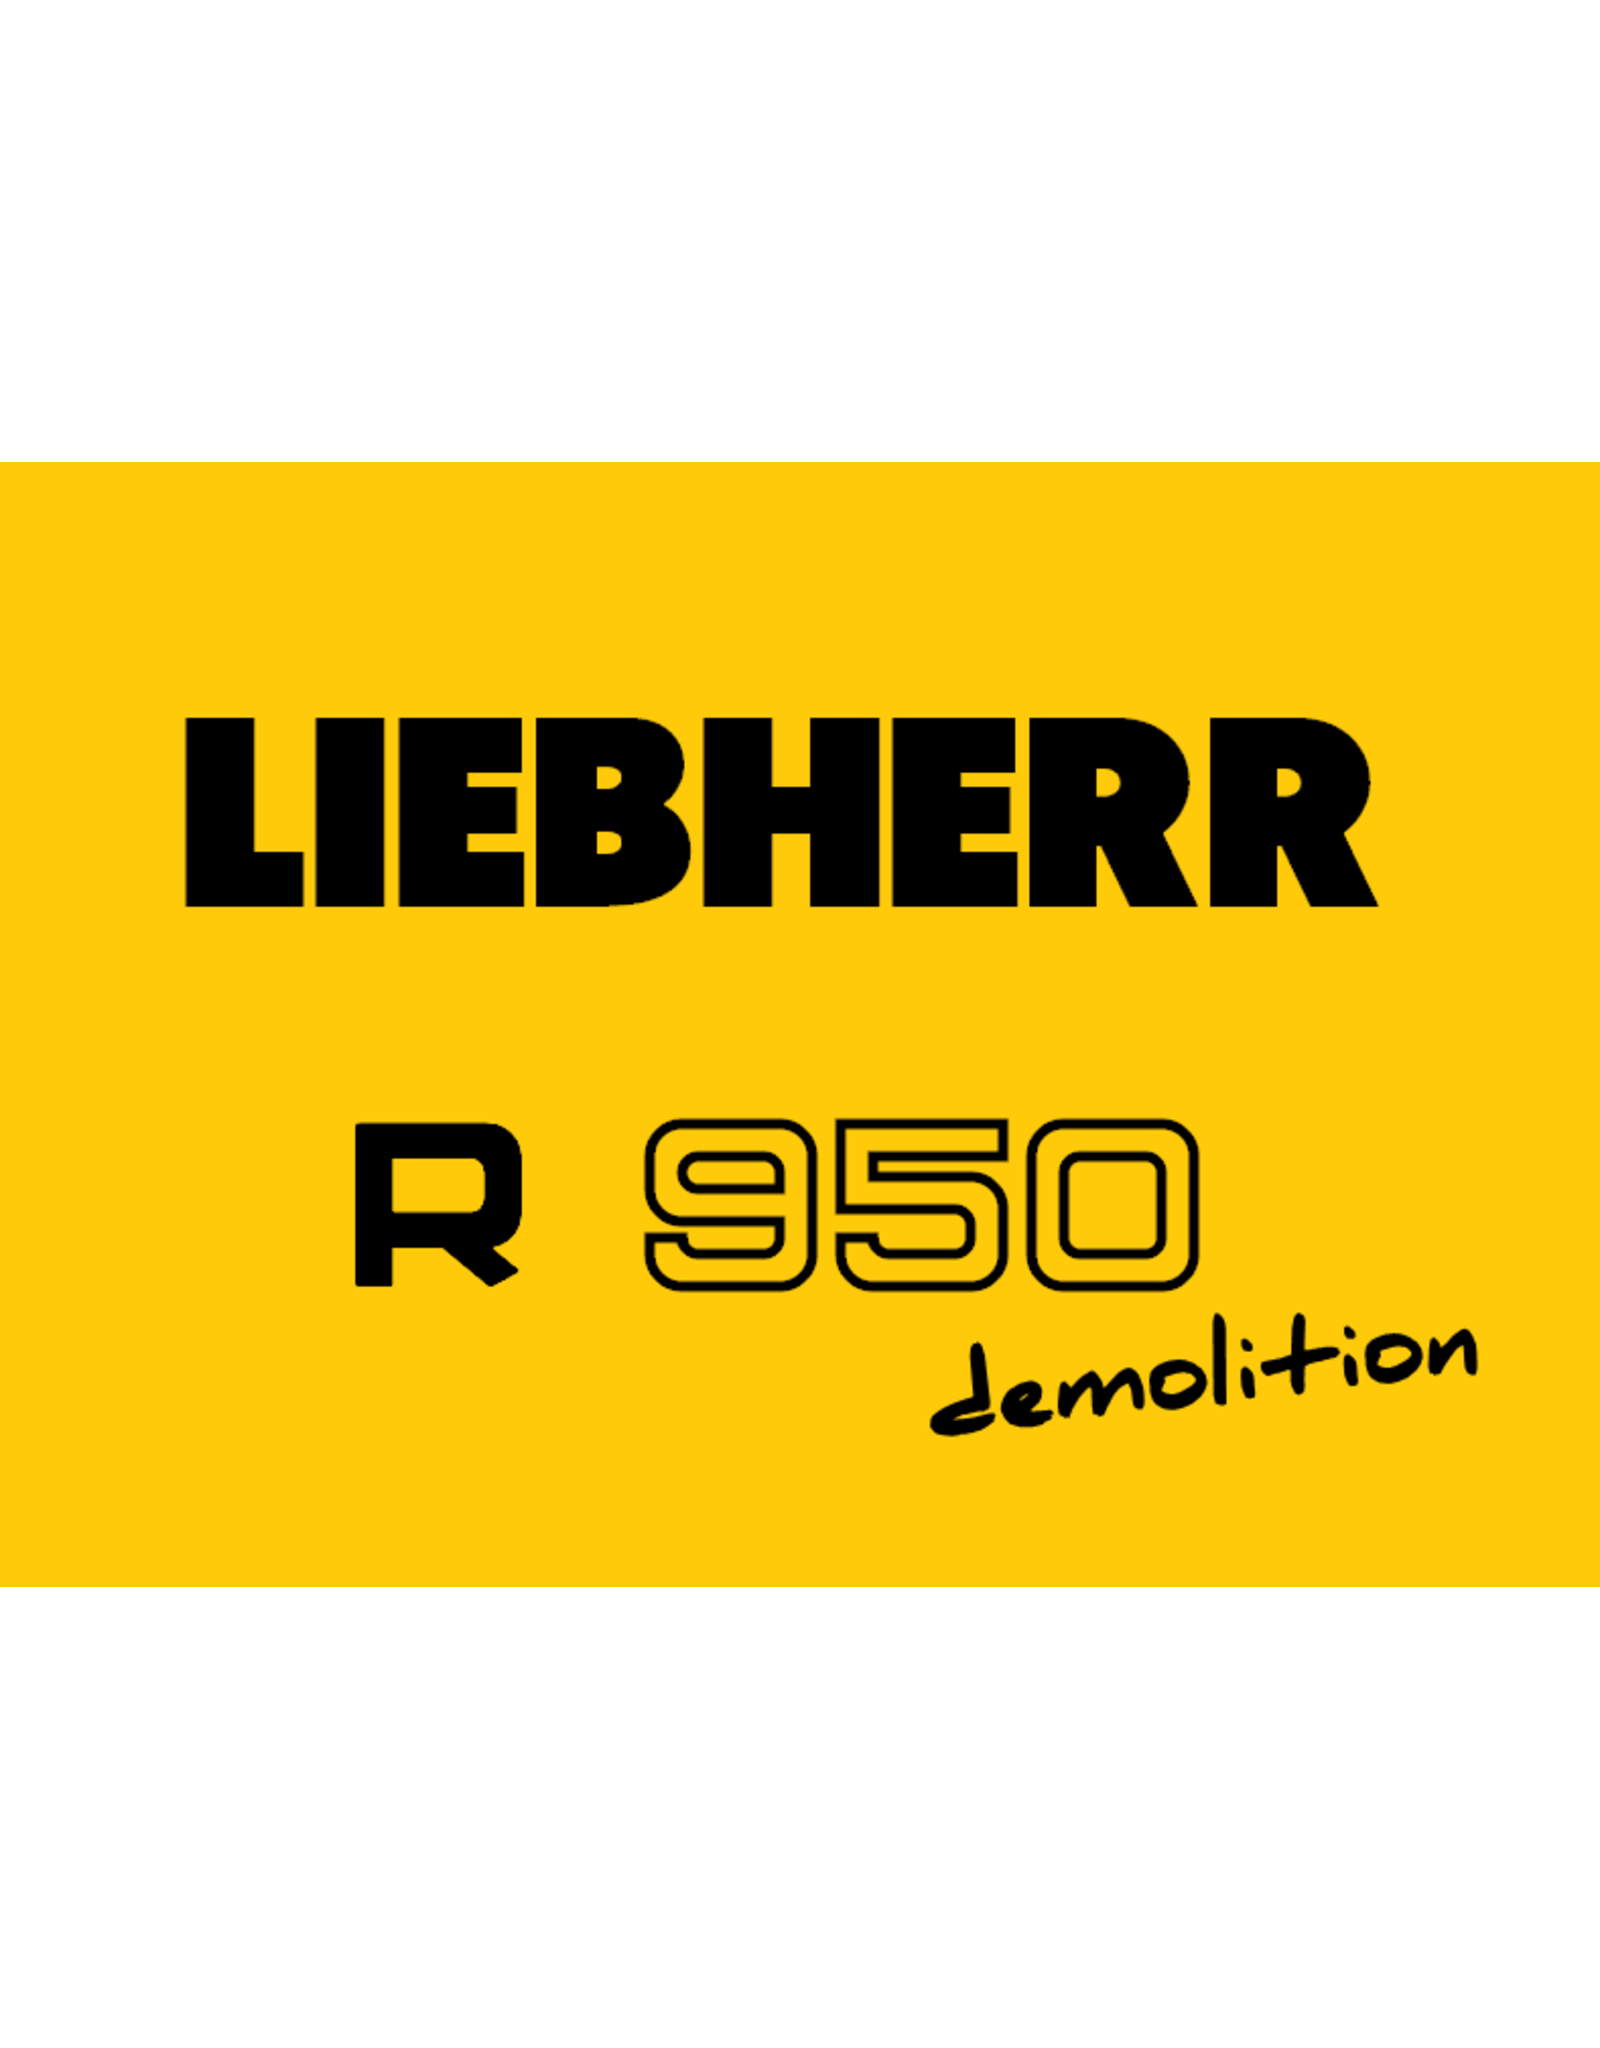 Echle Hartstahl GmbH FOPS für Liebherr R 950 Demolition